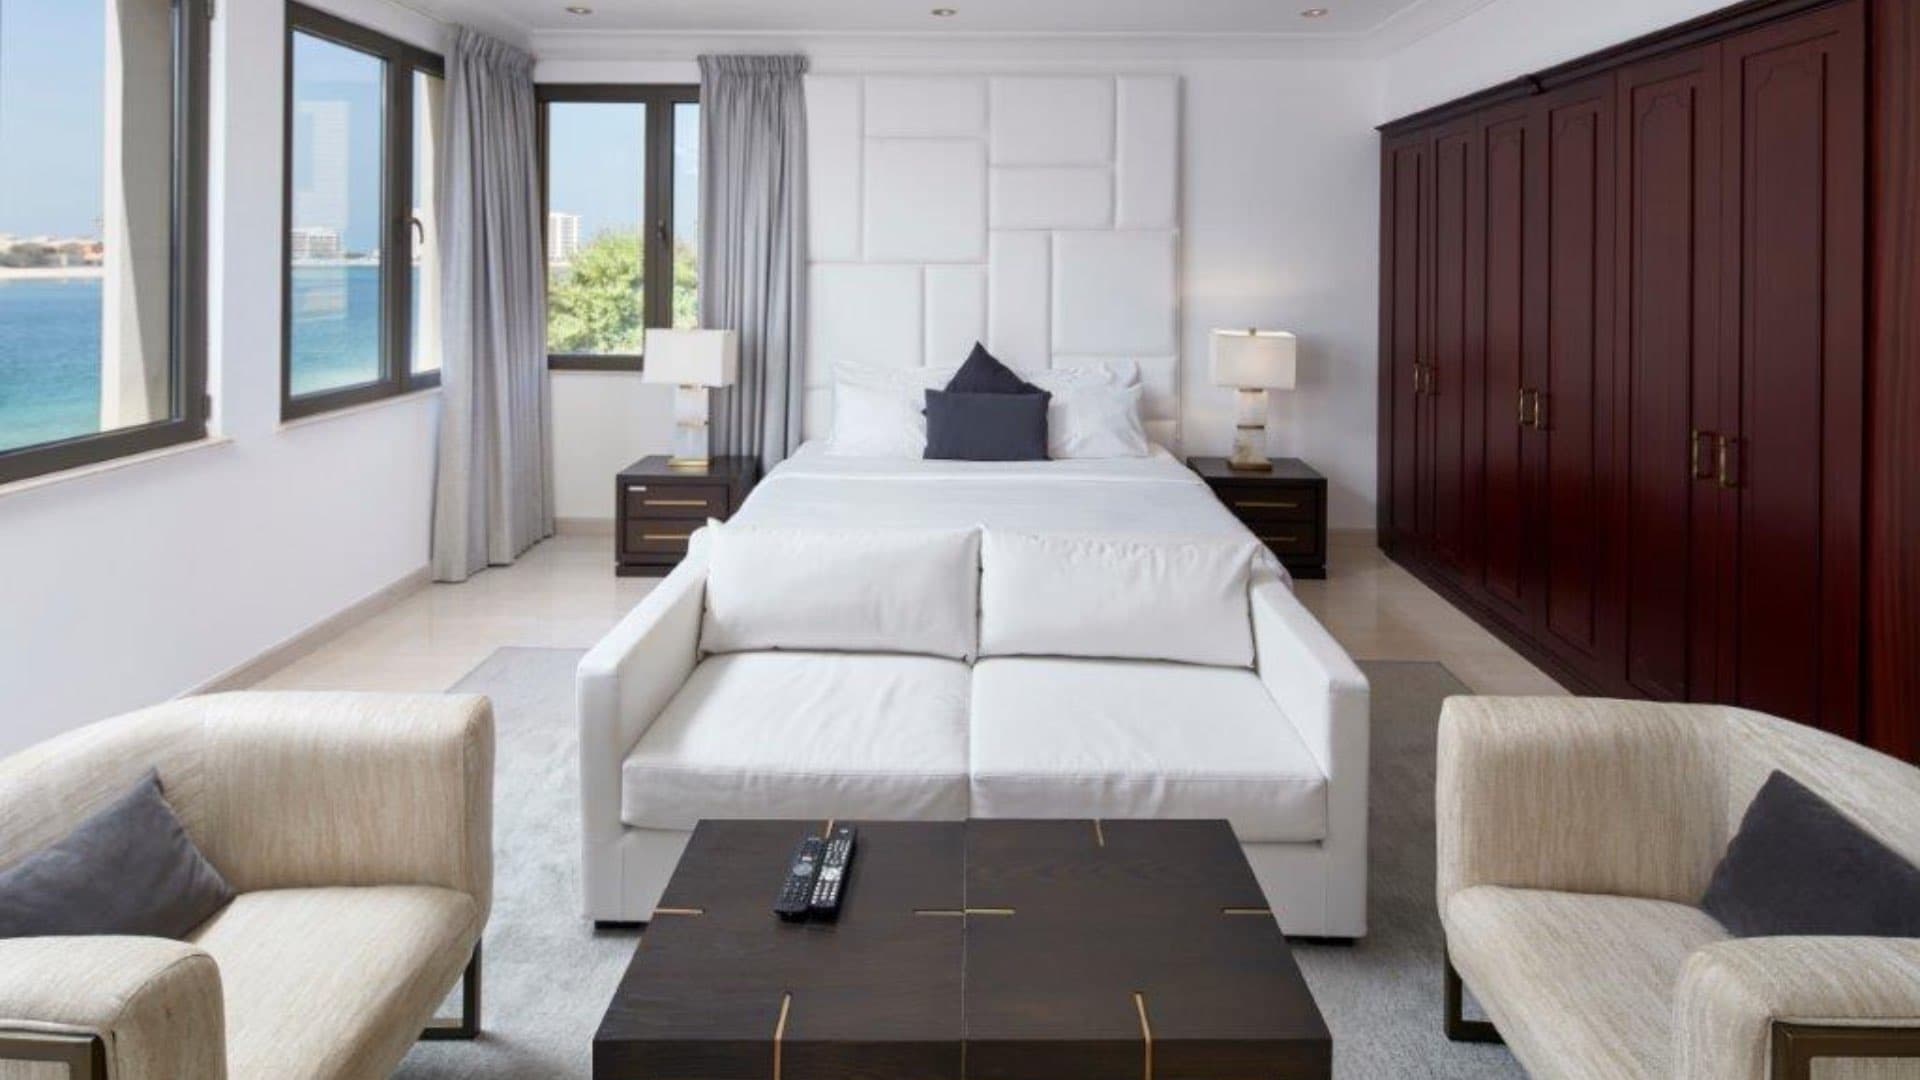 6 Bedroom Villa For Rent Signature Villas Lp10950 2061a8a7b7261e00.jpg